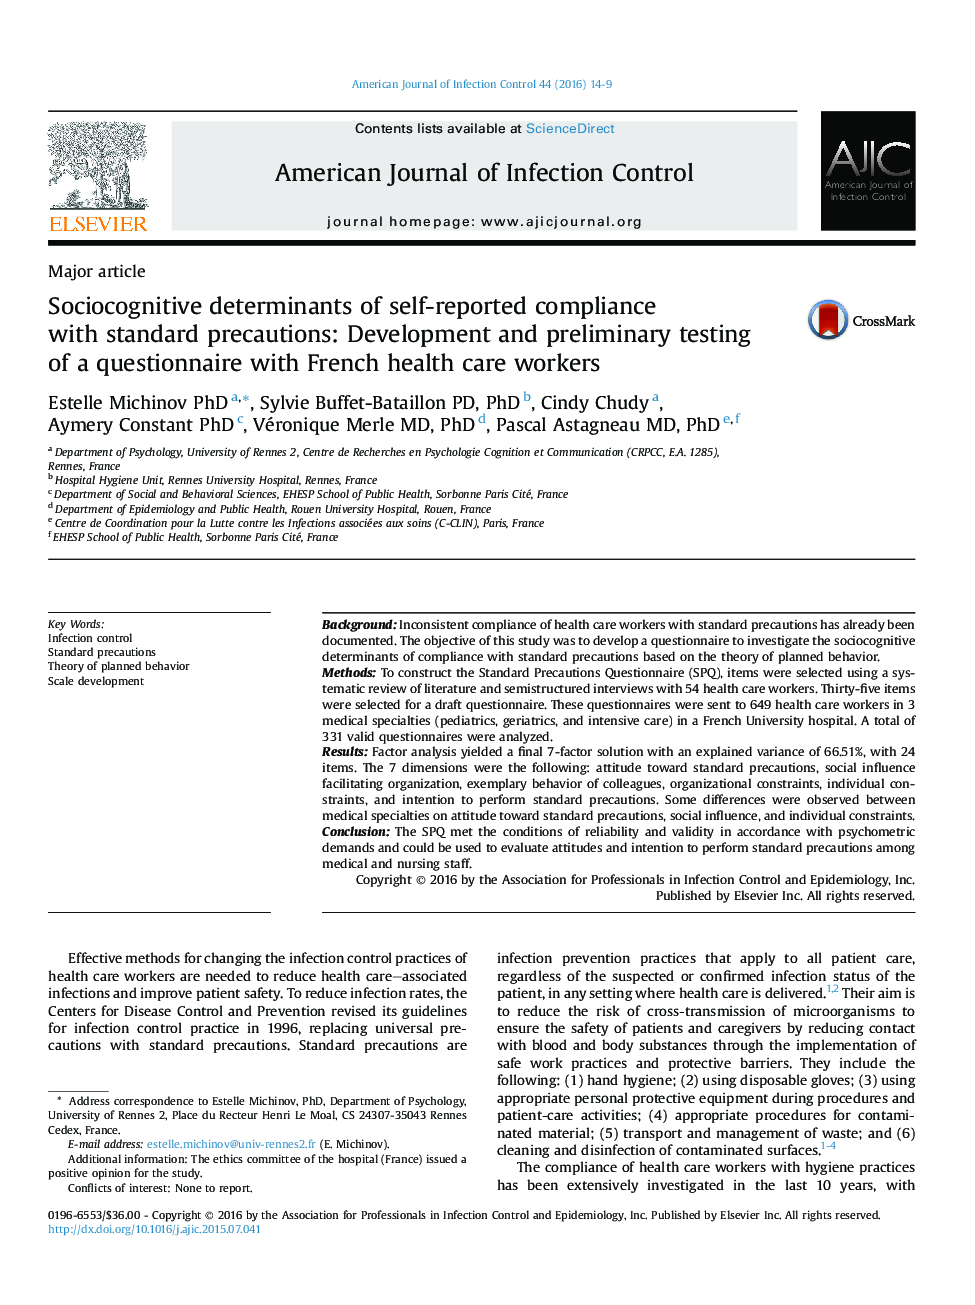 تعیین کننده های اجتماعی شناختی از پذیرش خود گزارش شده با احتیاط های استاندارد: تست و تست اولیه پرسشنامه با کارکنان بهداشتی فرانسه